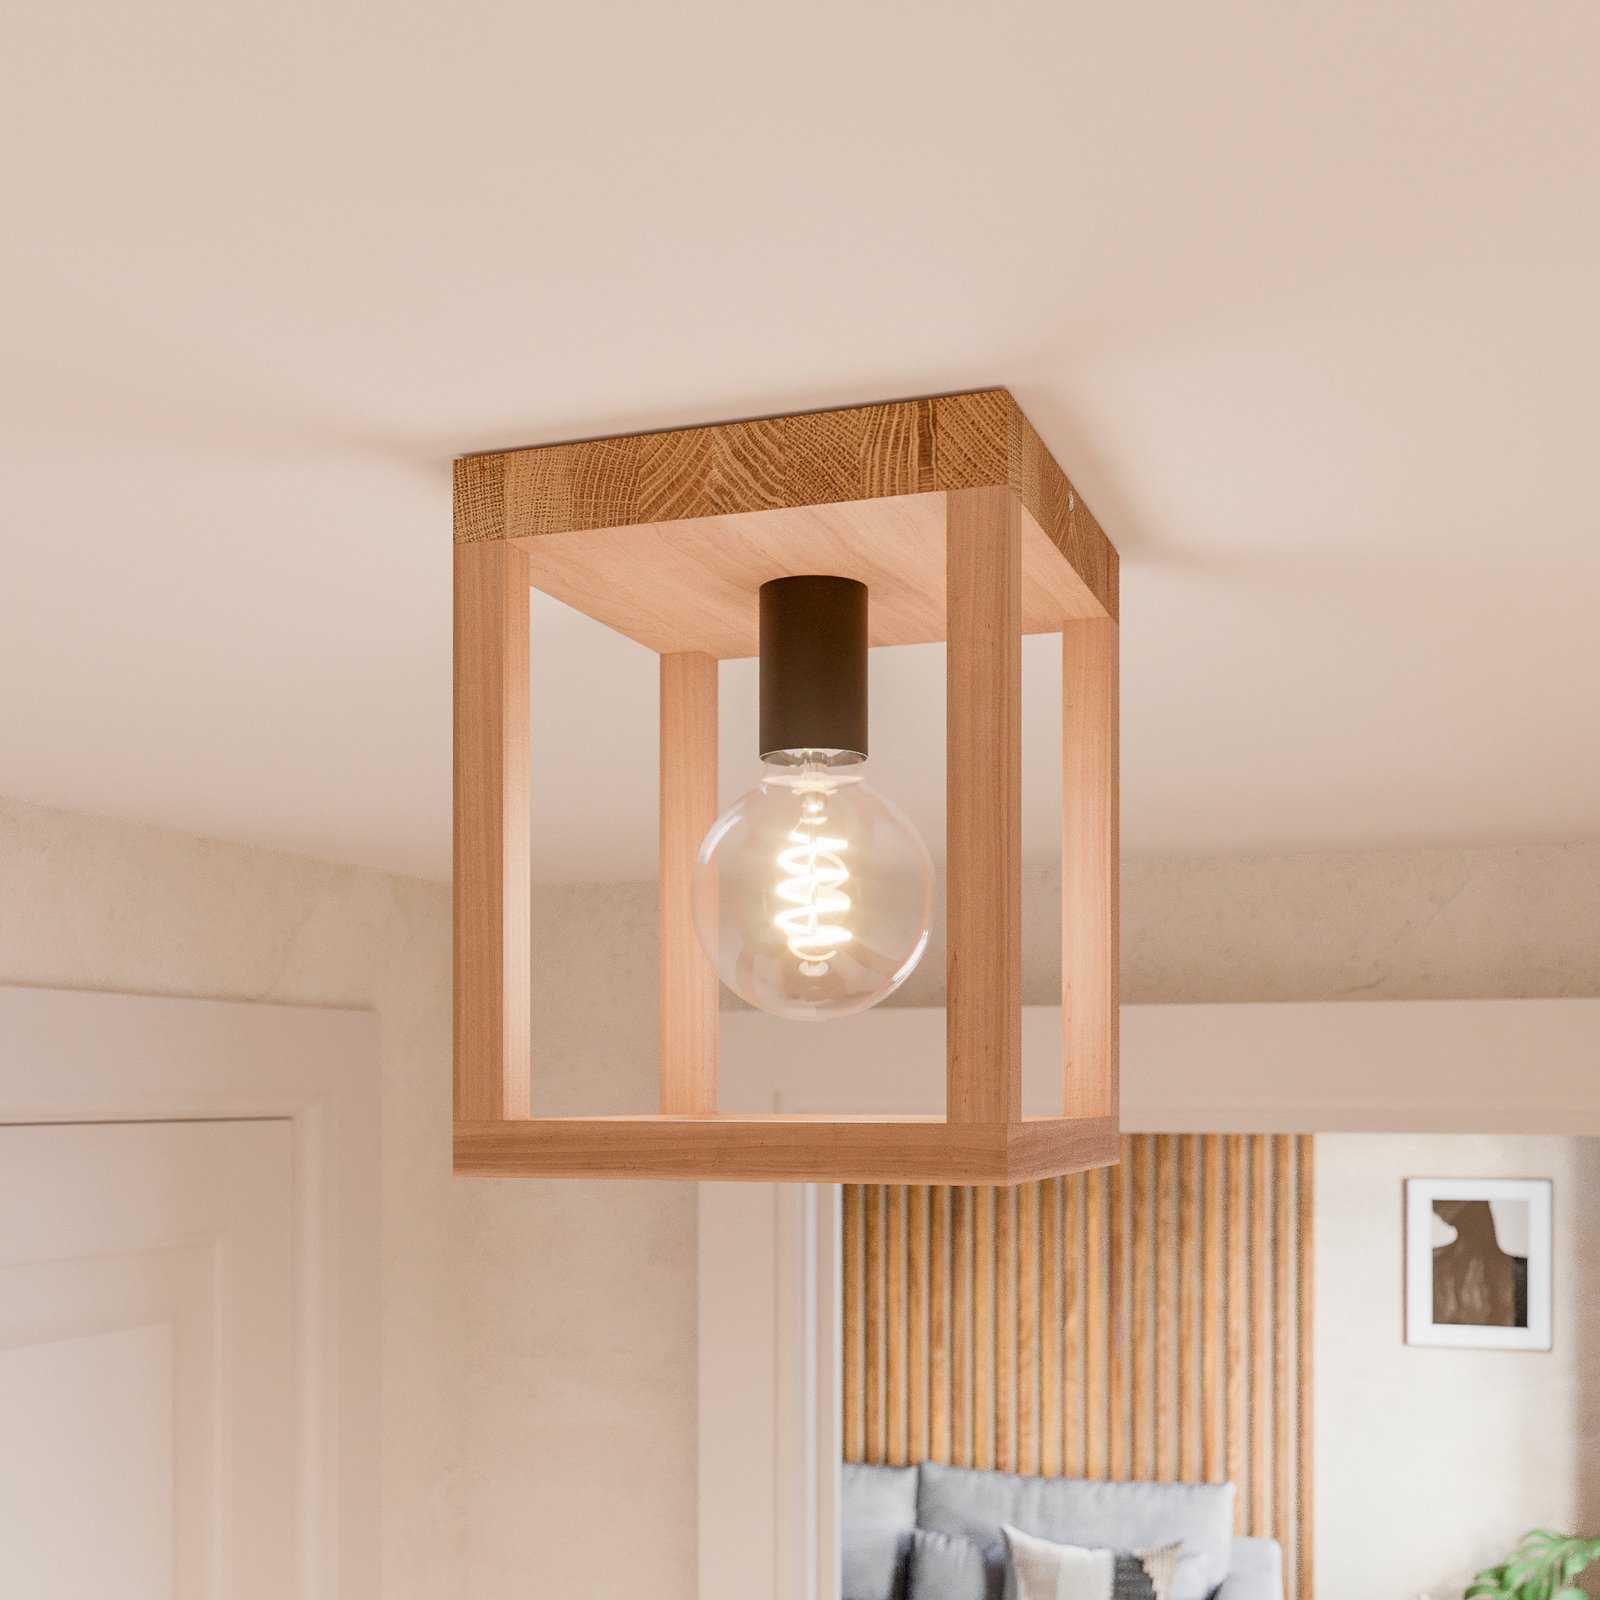 Envostar Rowan oak ceiling light, 1-bulb